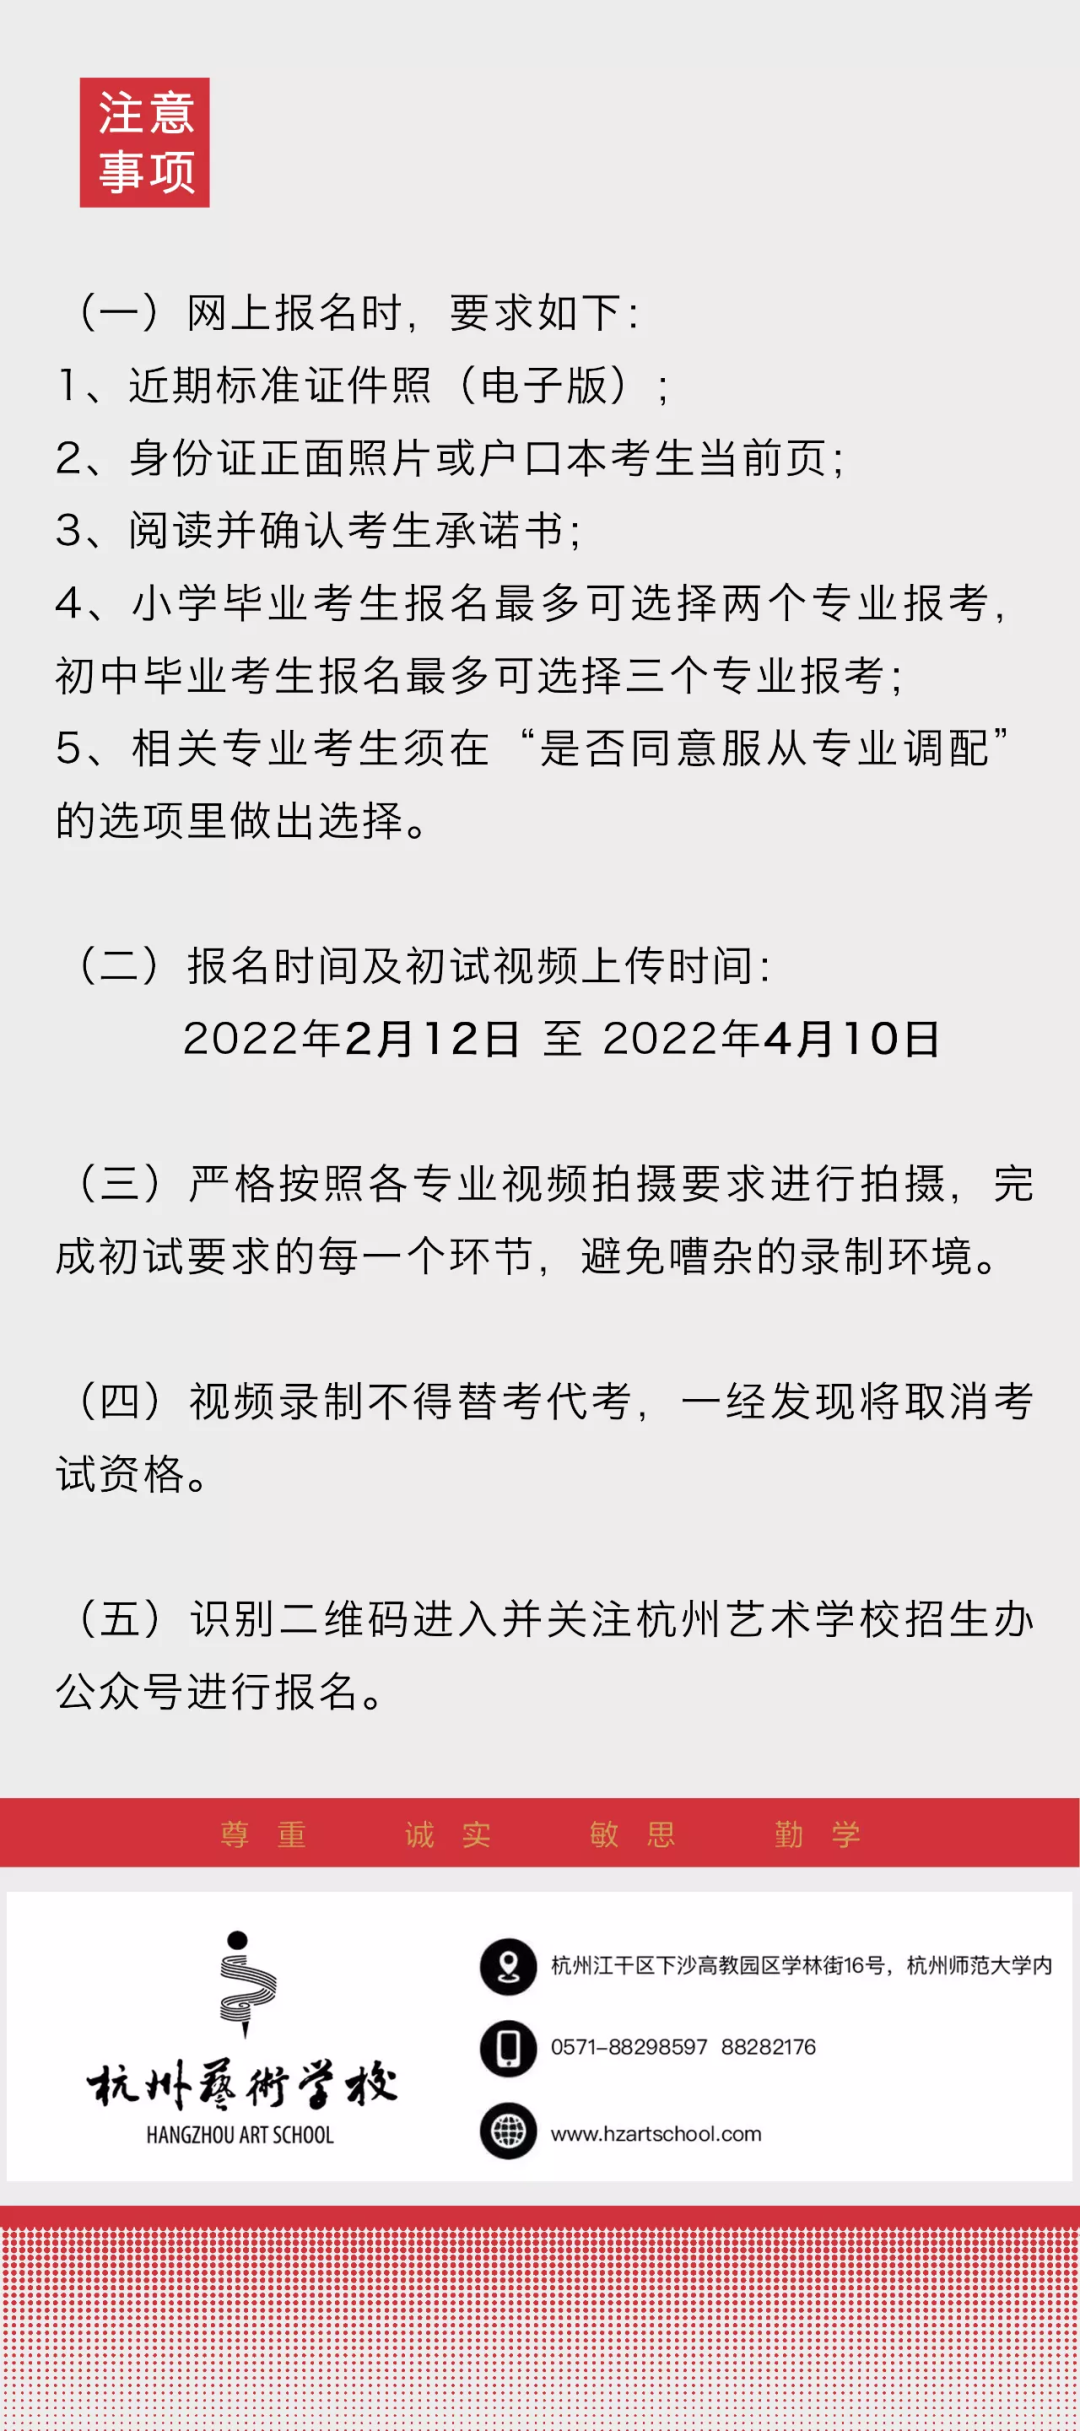 2022年杭州藝術學校招生簡章、招生對象、報考時間、考試內容及注意事項